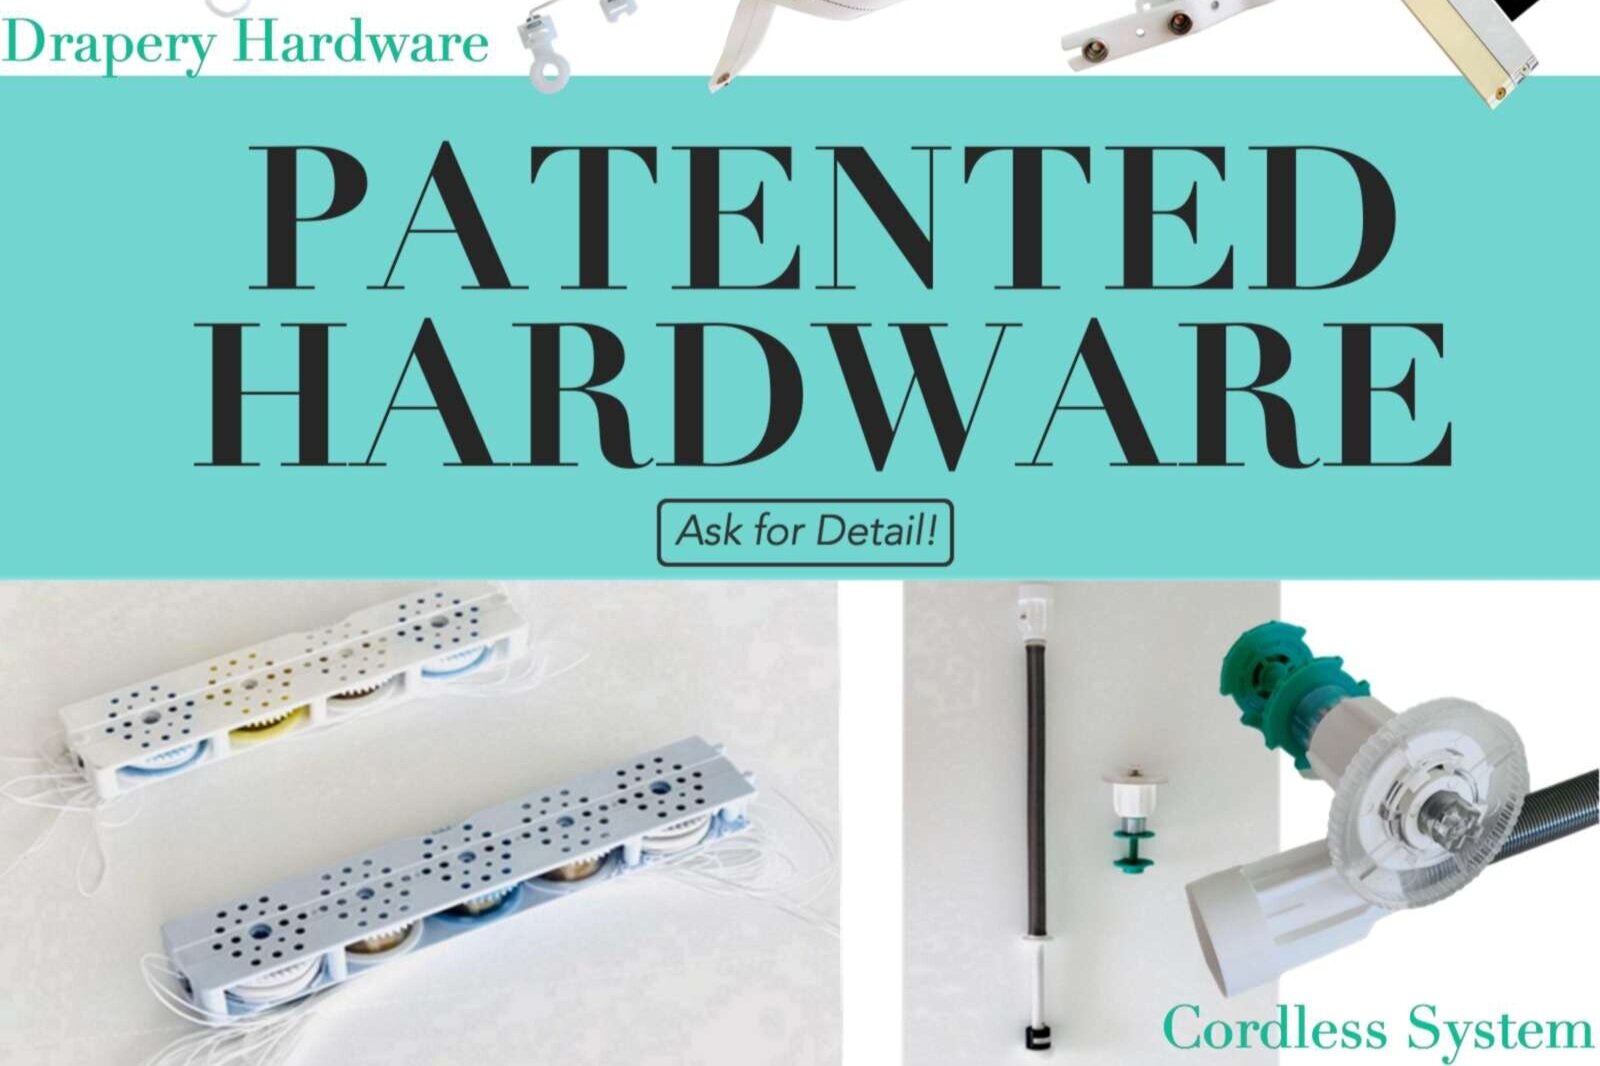 PatentedHardware.jpg